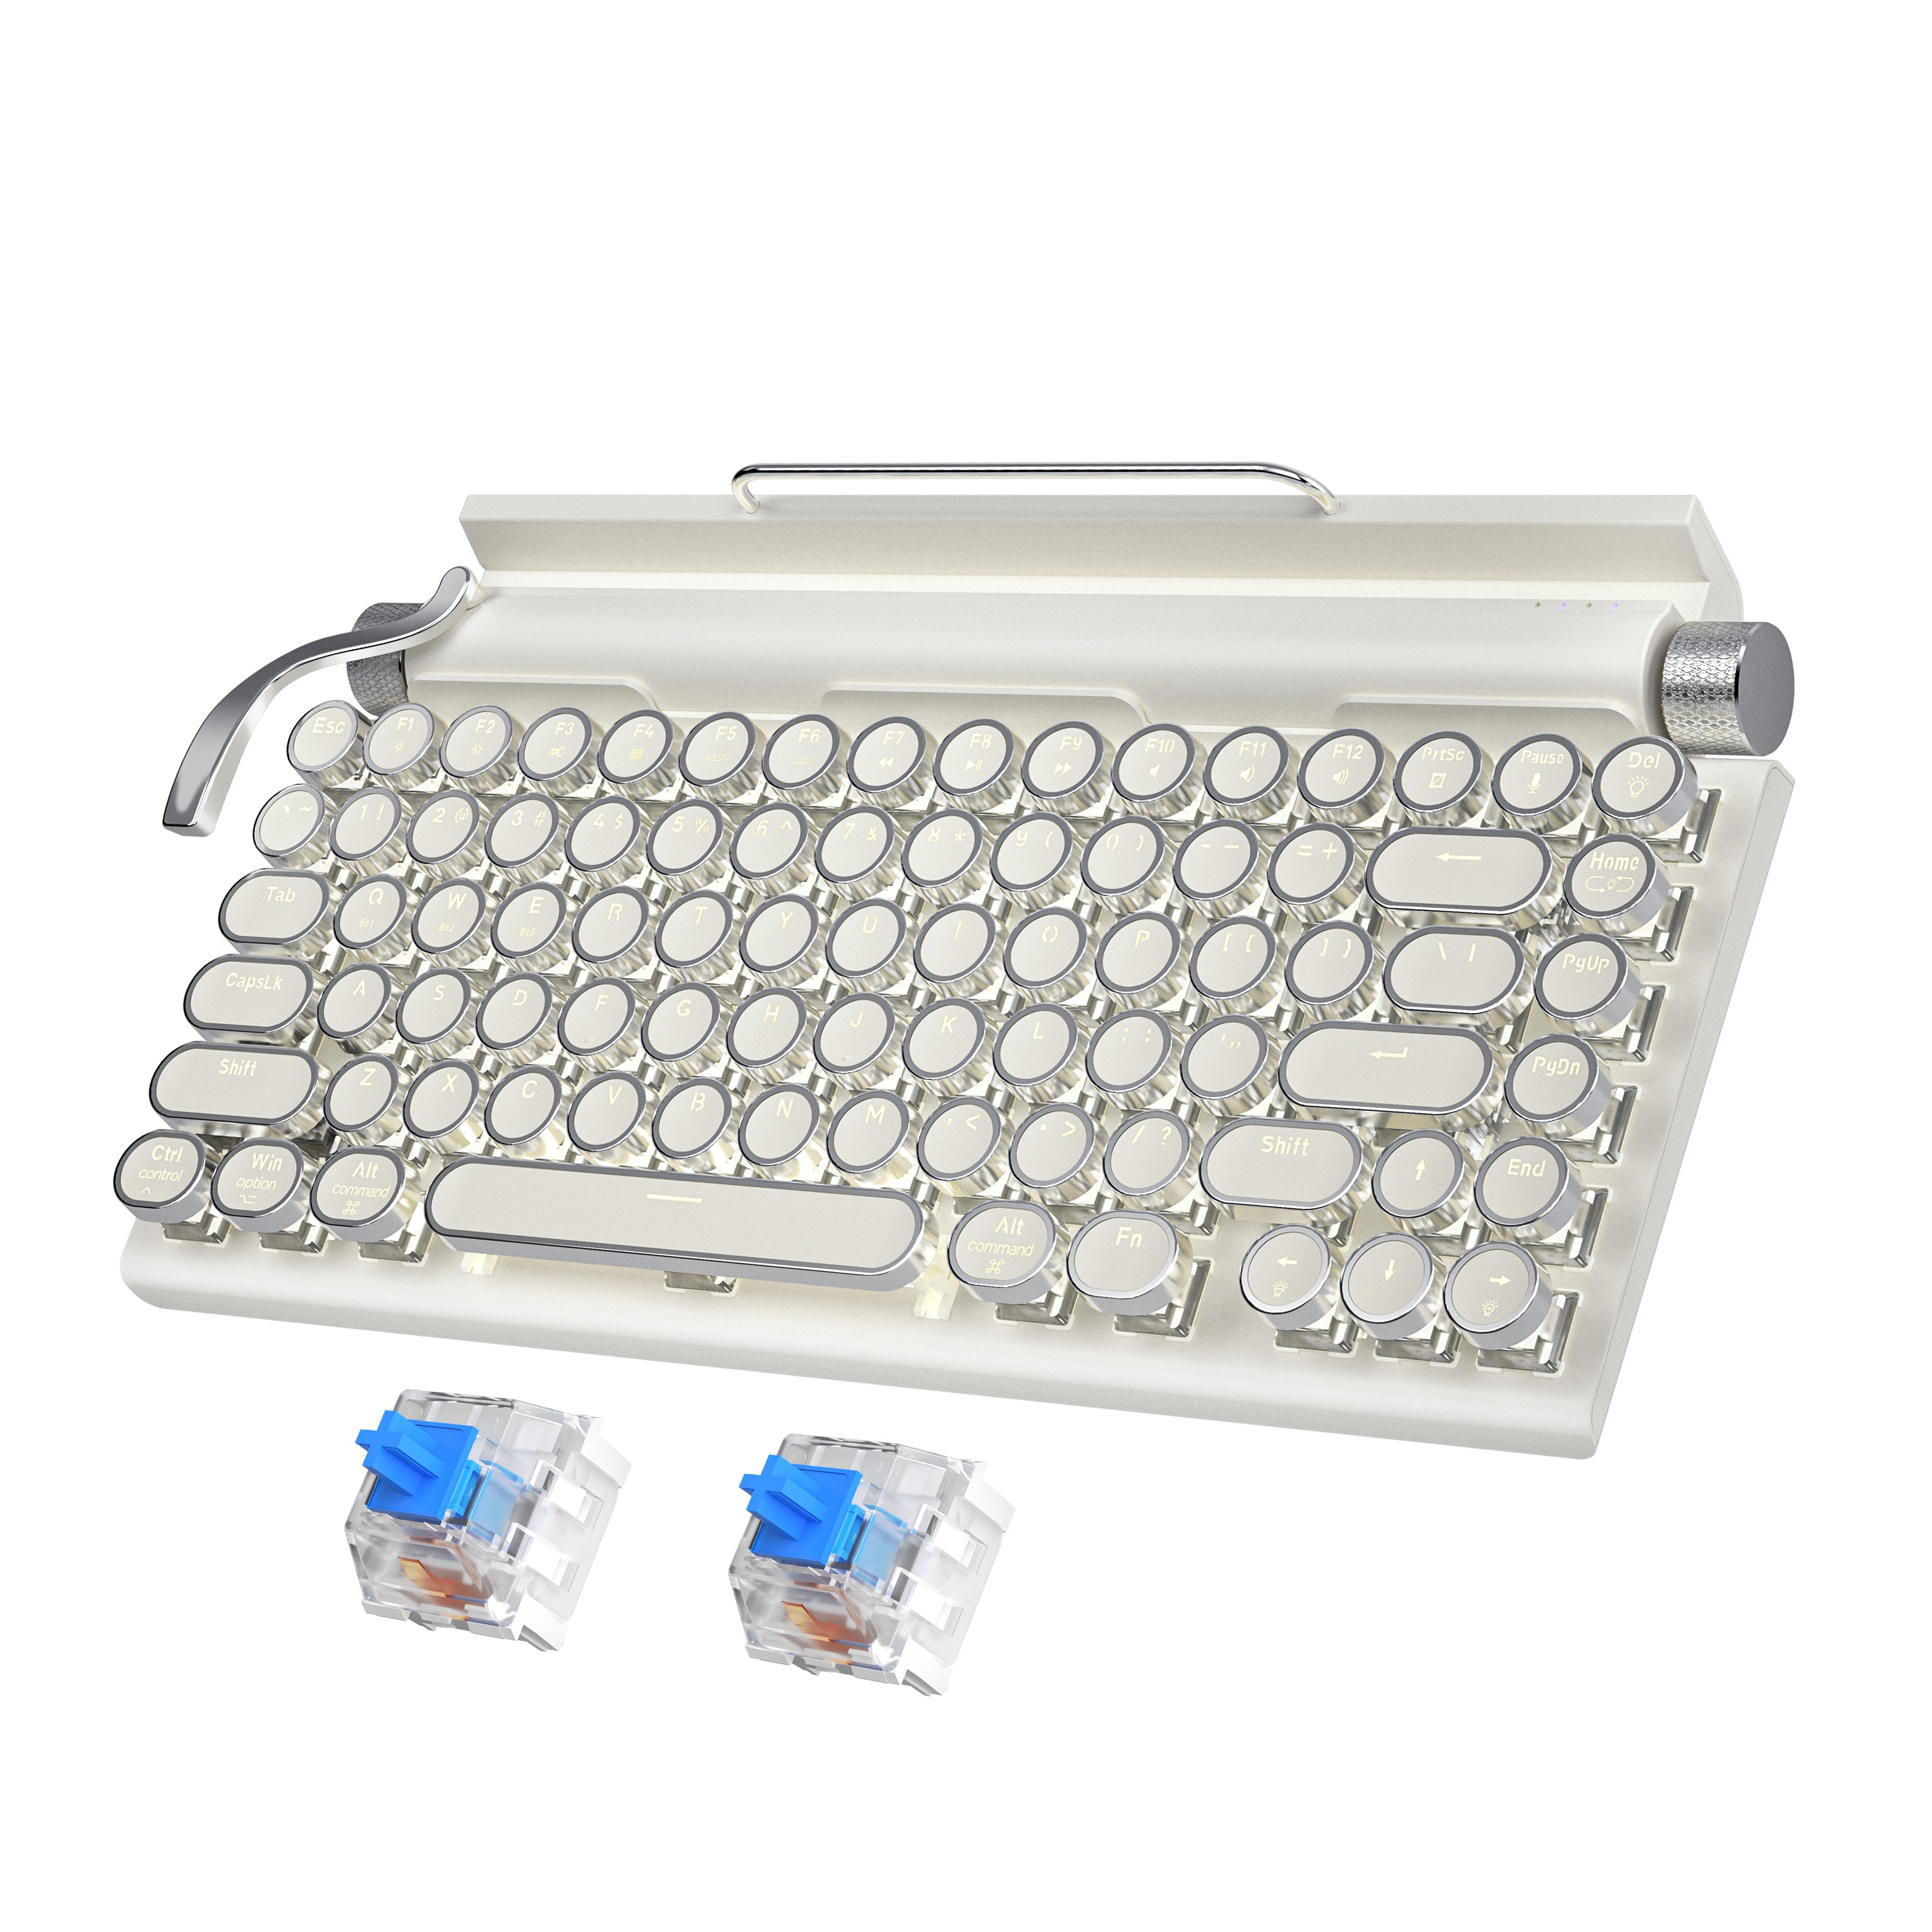 981 Retro Express Wireless, Mechanical Gaming Vintage Typewriter Keyboard